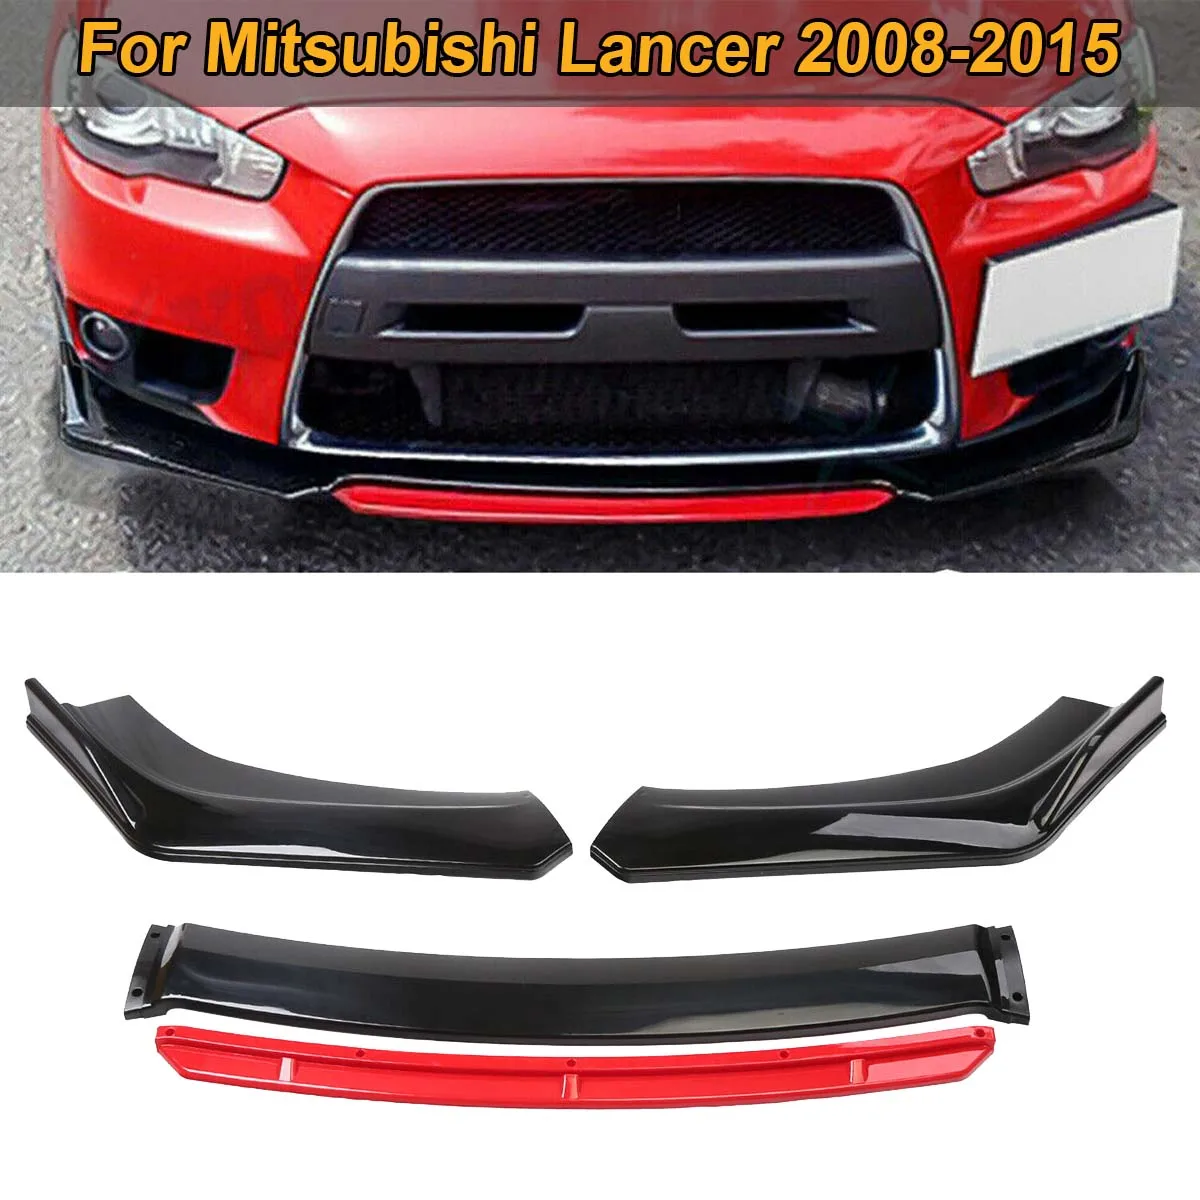 

Передний бампер для Mitsubishi Lancer 2008-2015, спойлер для губ, боковой сплиттер, дефлектор, диффузор, комплект кузова, защита, автомобильные аксессуары